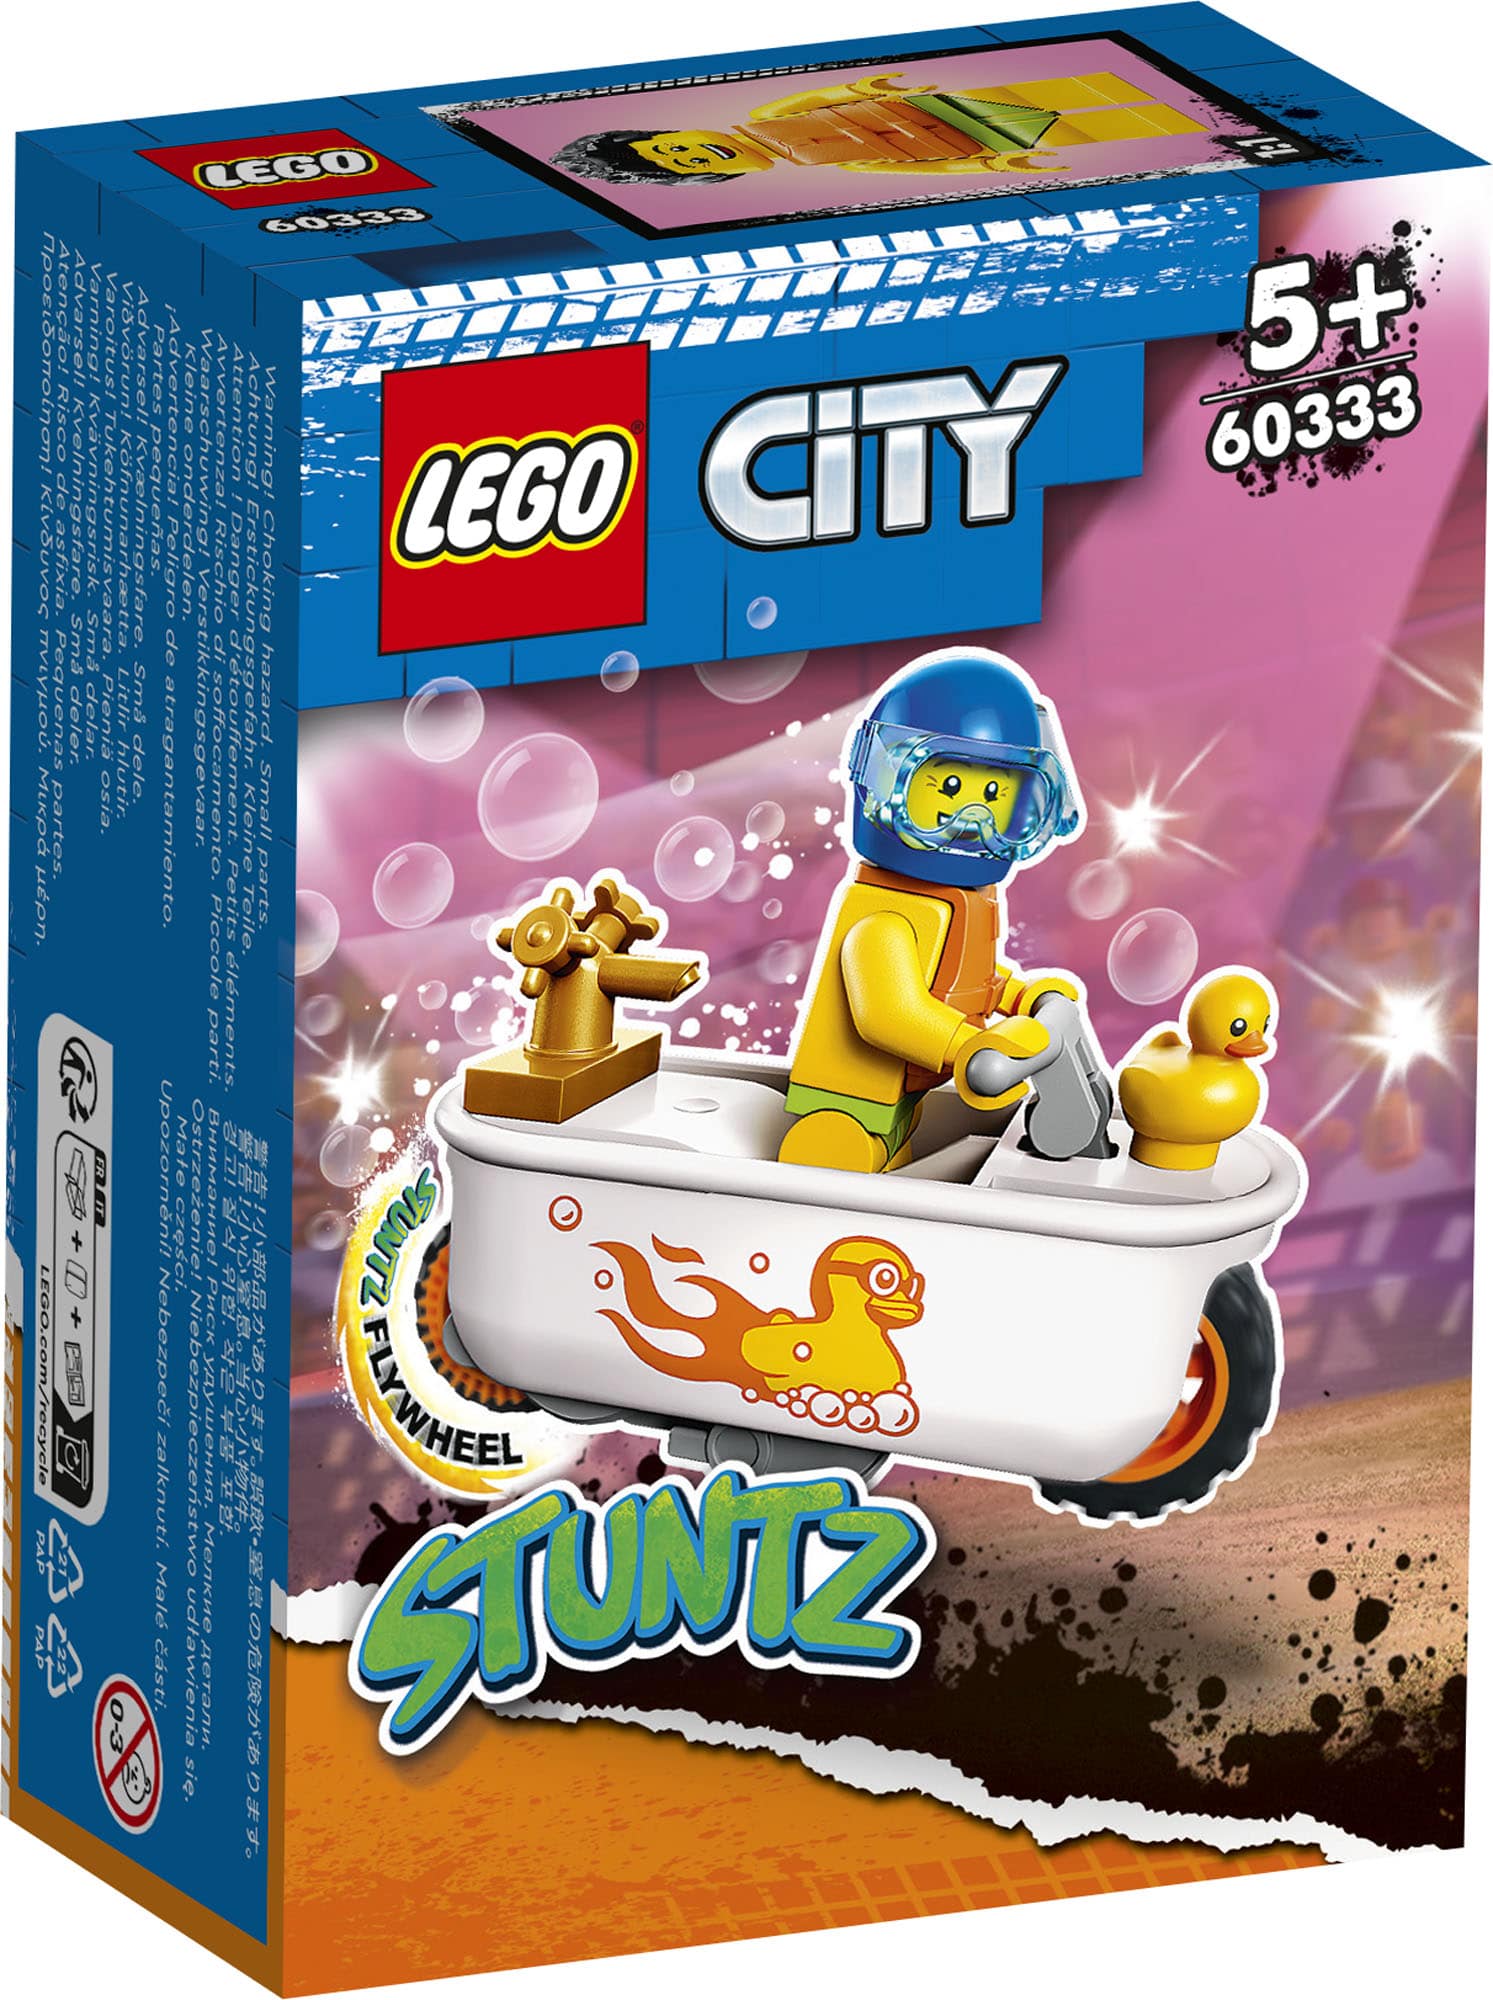 LEGO-City-Stuntz-60333.jpg